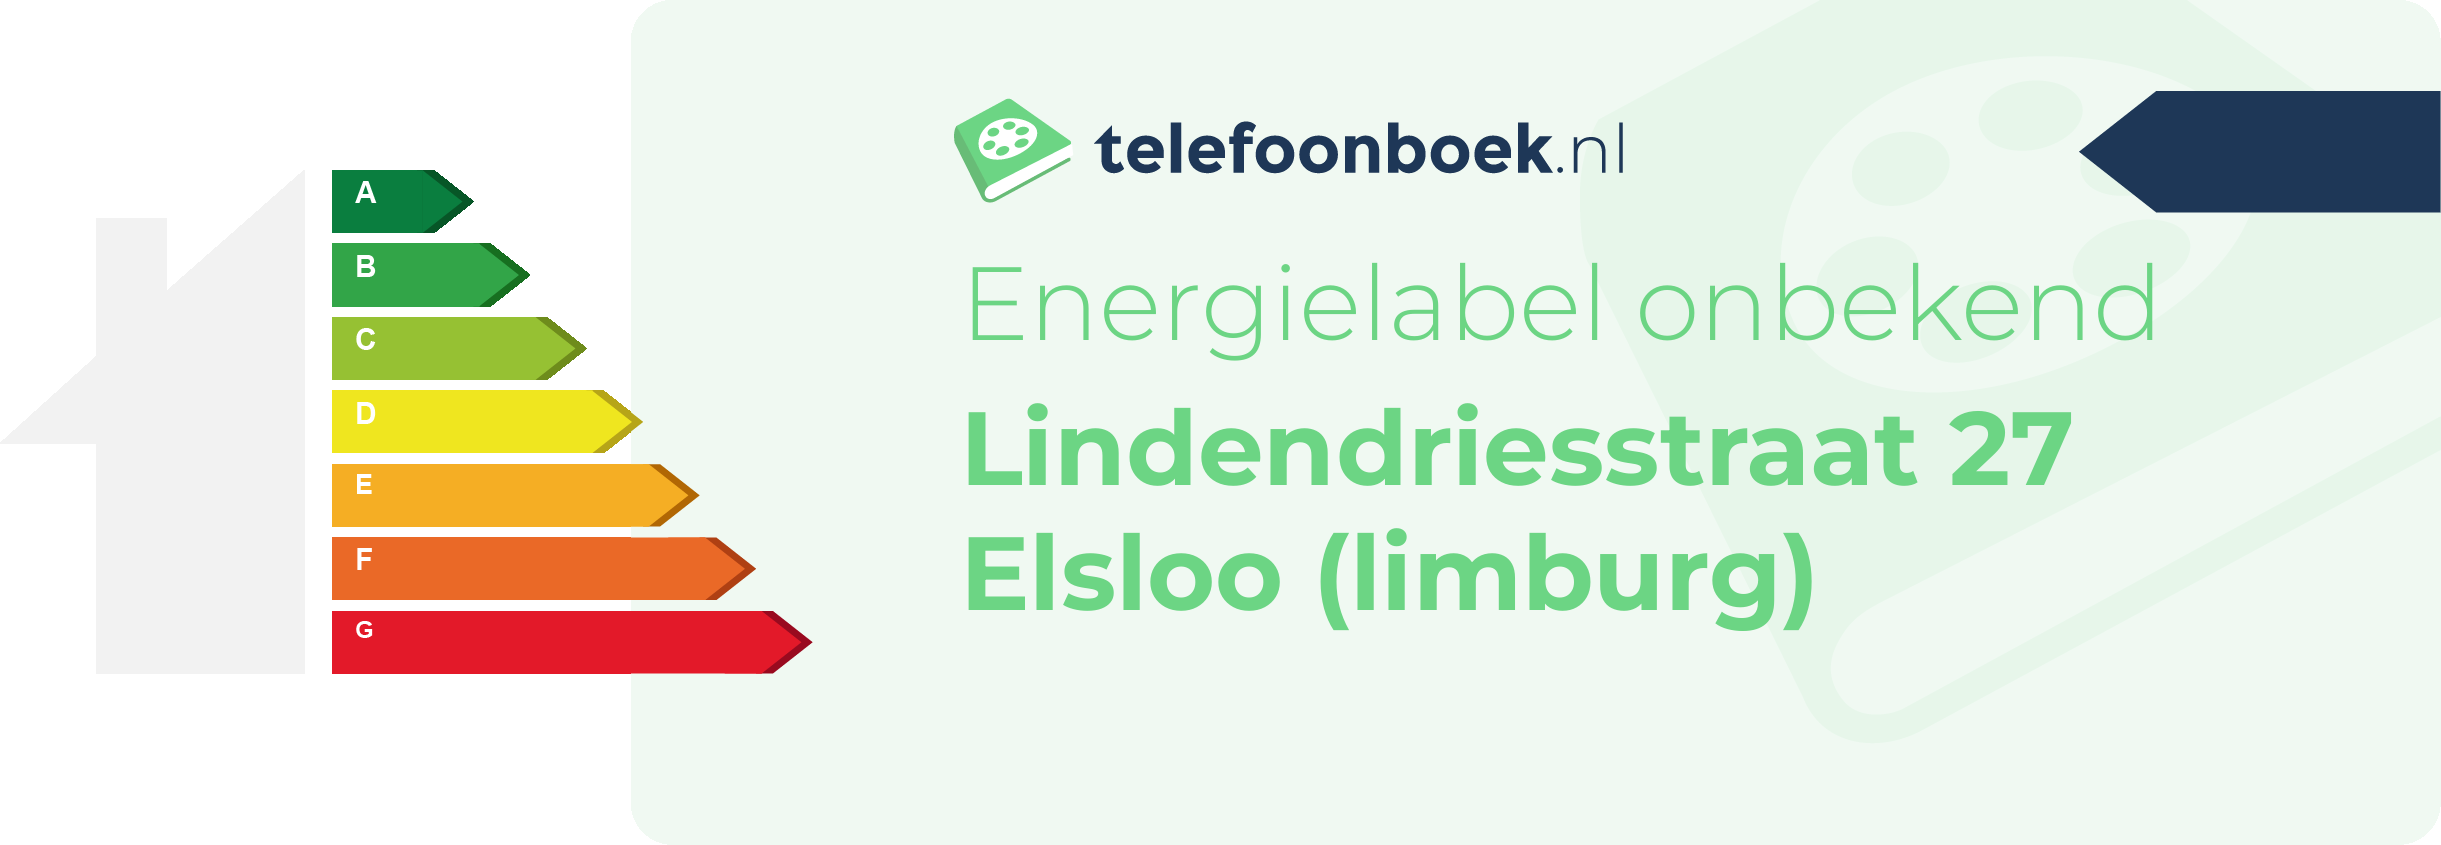 Energielabel Lindendriesstraat 27 Elsloo (Limburg)